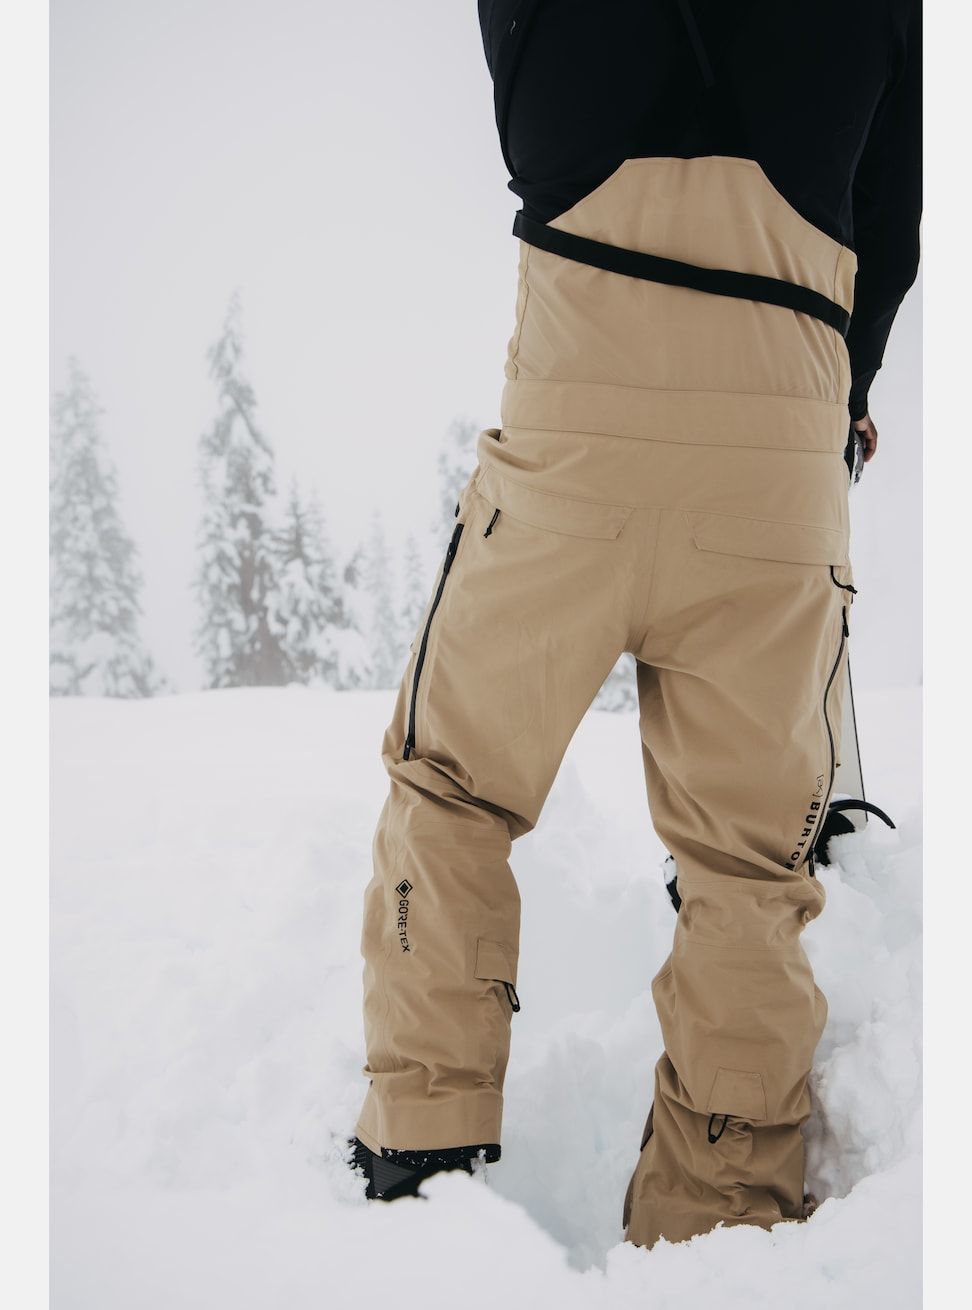 Men's Burton [ak] Freebird GORE-TEX 3L Stretch Bib Pants Kelp Snow Pants